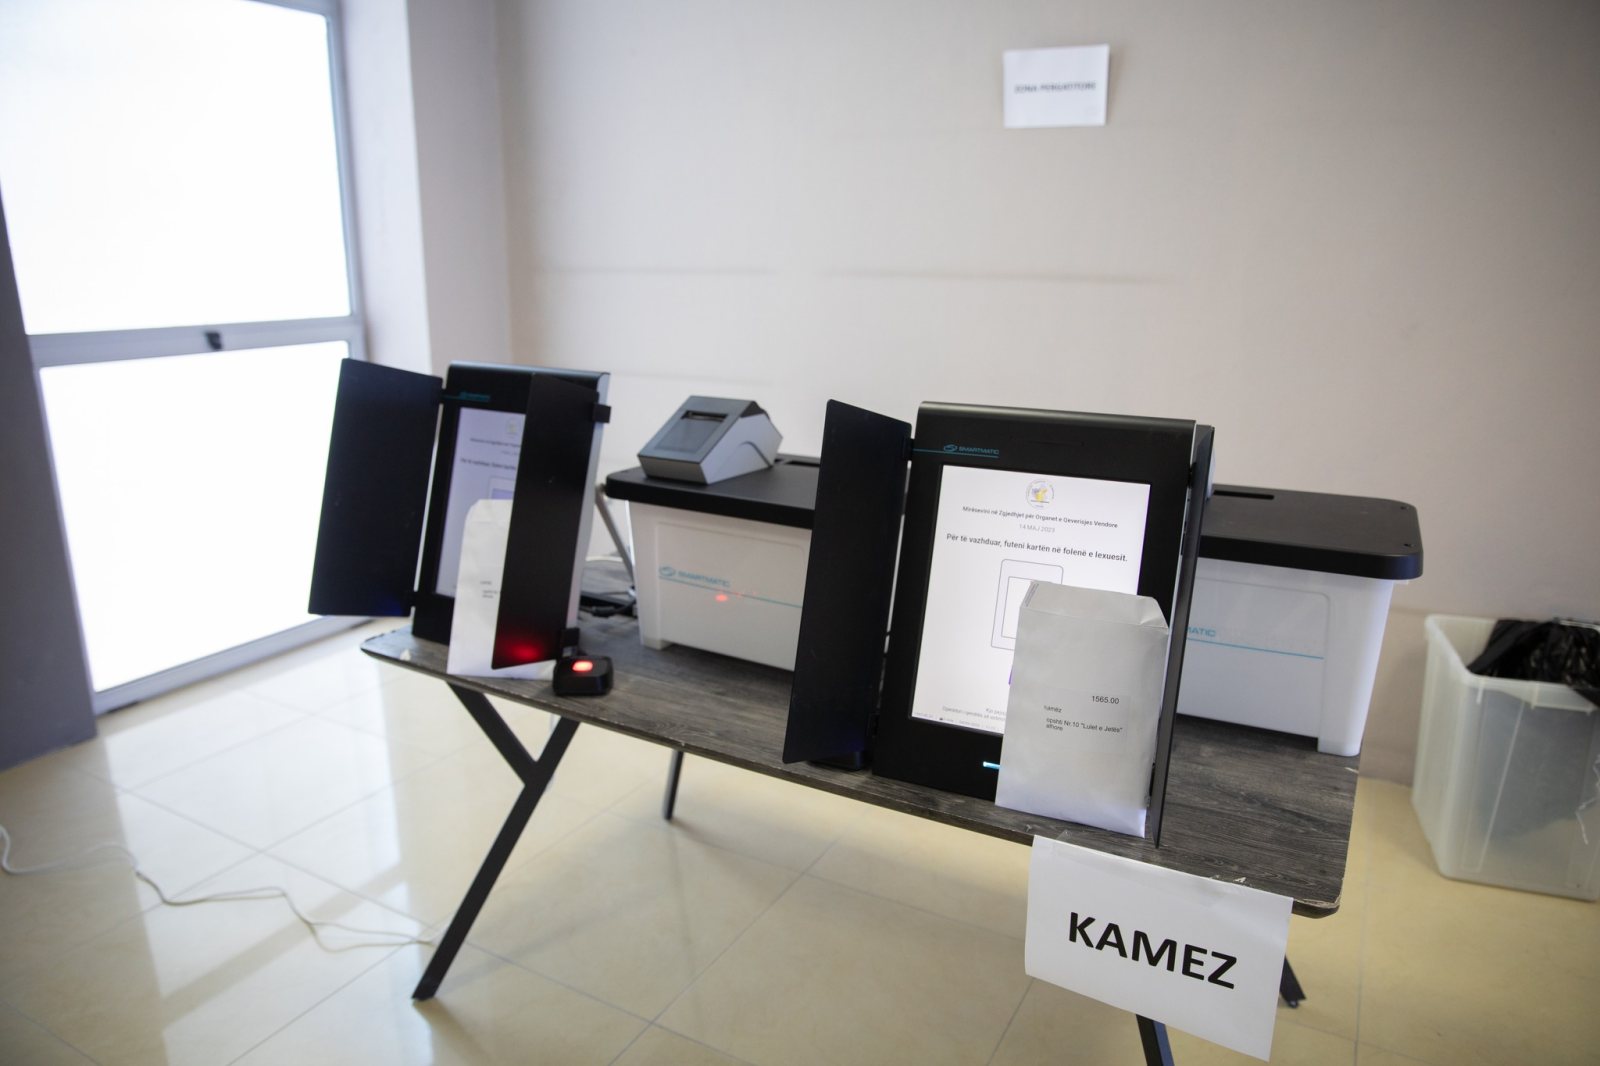 Zgjedhjet vendore, trajnohen operatorët e pajisjeve të votimit dhe numërimit elektronik